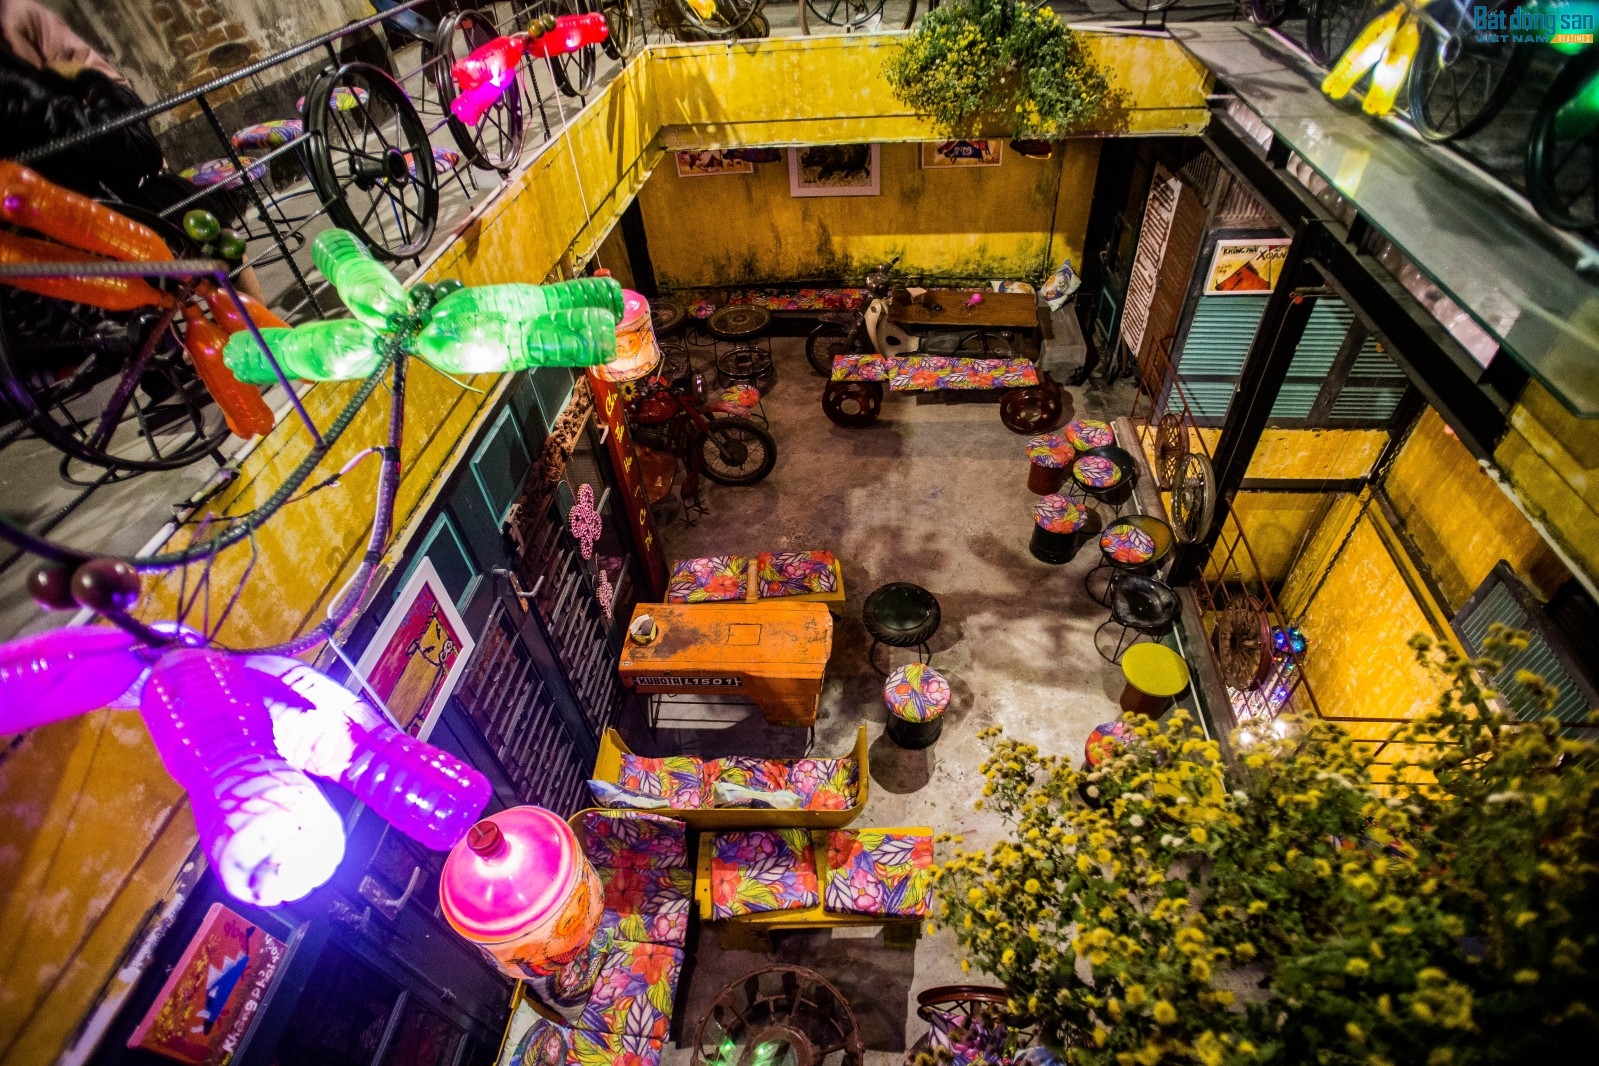 Nằm trong một con ngõ ở phố Hàng Tre, thuộc khu phố cổ Hà Nội, ngôi nhà nhỏ 4 tầng cổ kính được chủ nhà tận dụng làm thành một quán cafe với không gian độc đáo nhất Hà Nội.